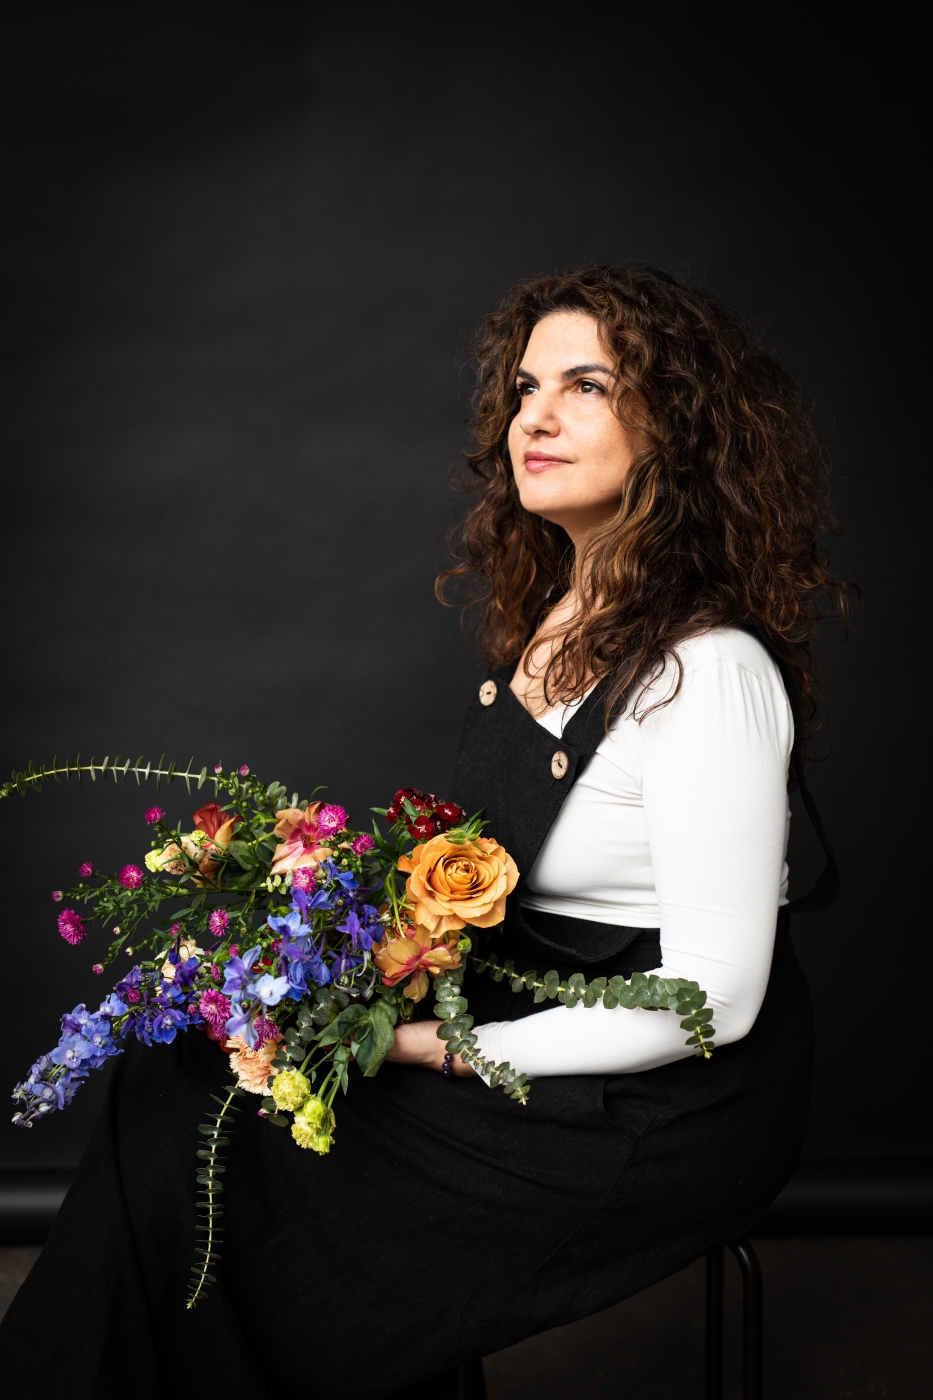 Sinemstraughan-by-nadine-Heller-Menzel-Frau-mit-Blumenstrauß-vor-schwarzem-Hintergrund